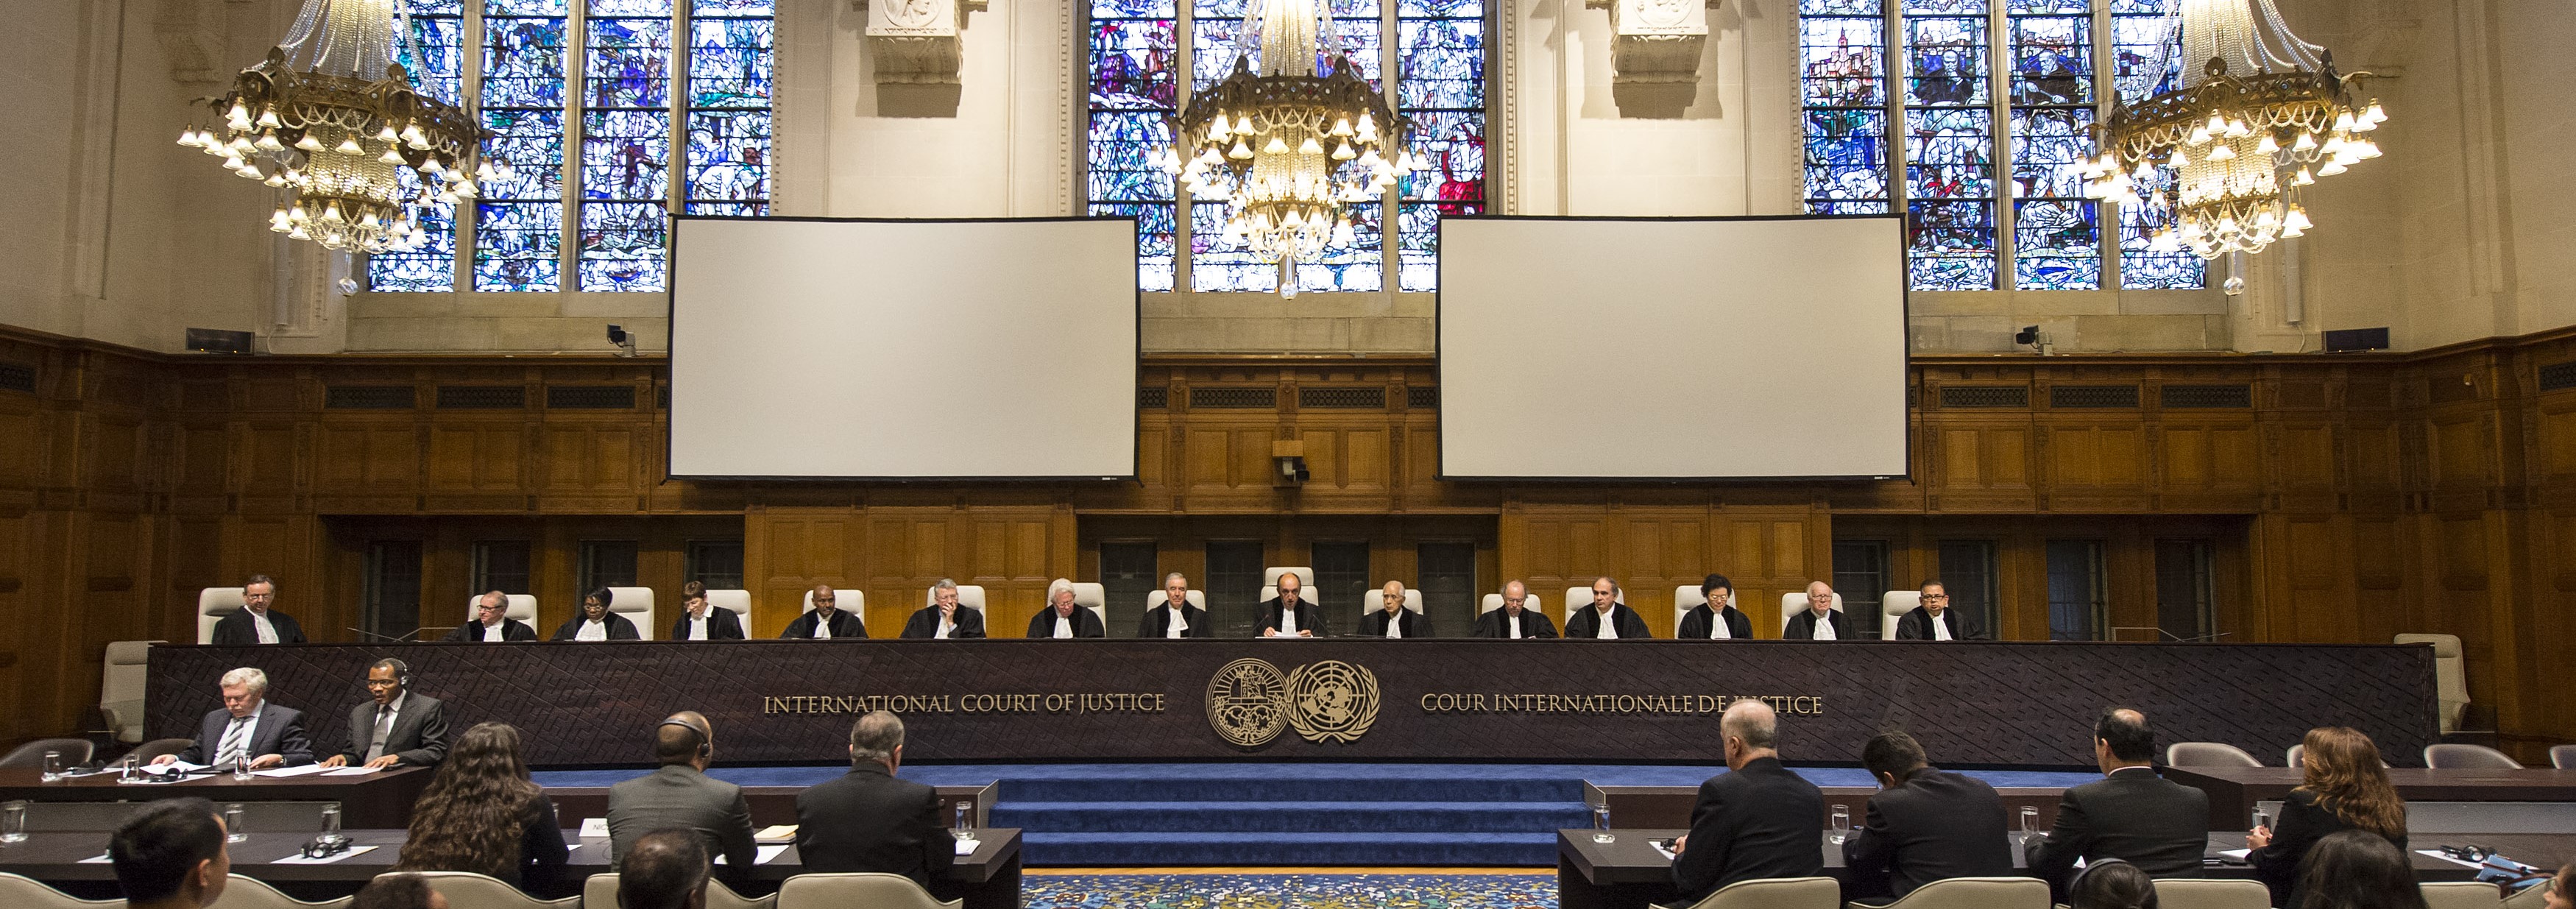 Стороны в международном суде. Международный суд в Гааге. Международный Уголовный трибунал (Гаага). Здание международного суда ООН В Гааге. Международный суд ООН камера что это.